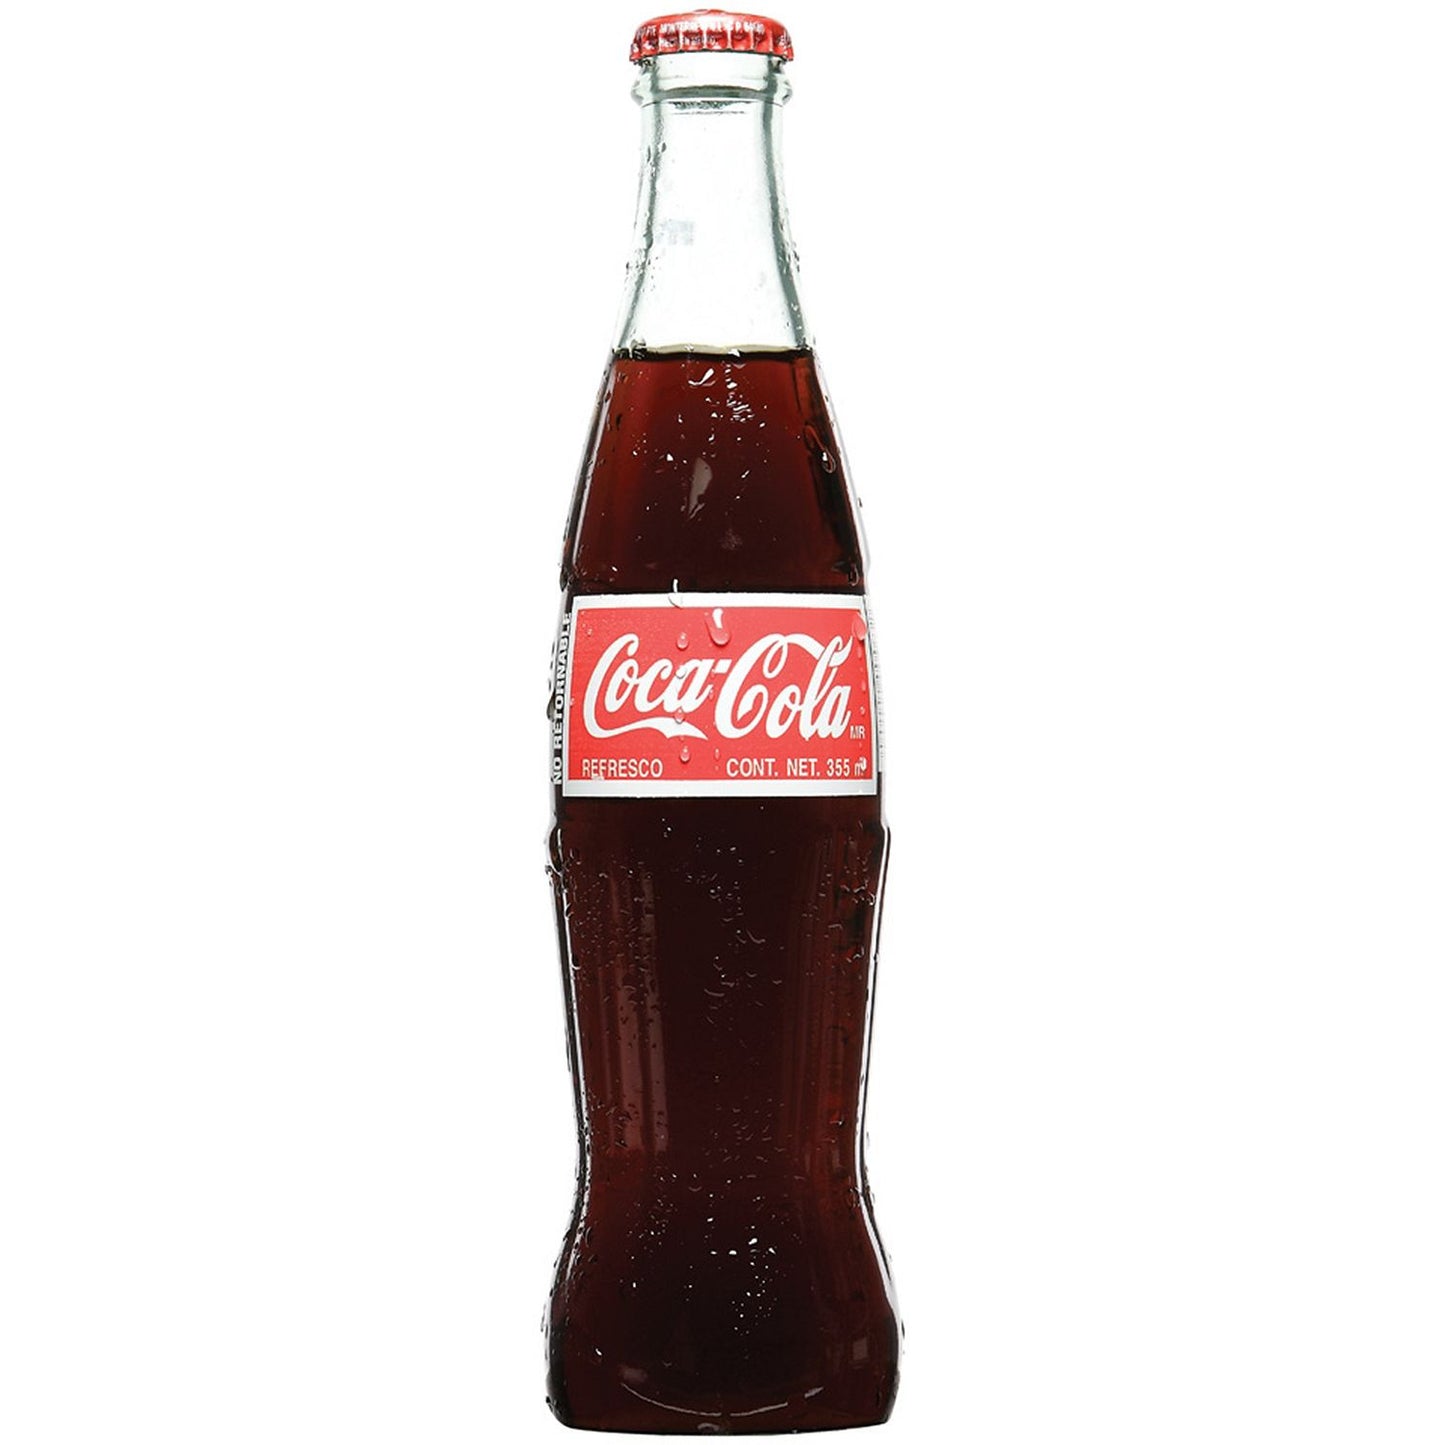 Coca Cola de Mexico,Coke(355 ml, 24 pk.)